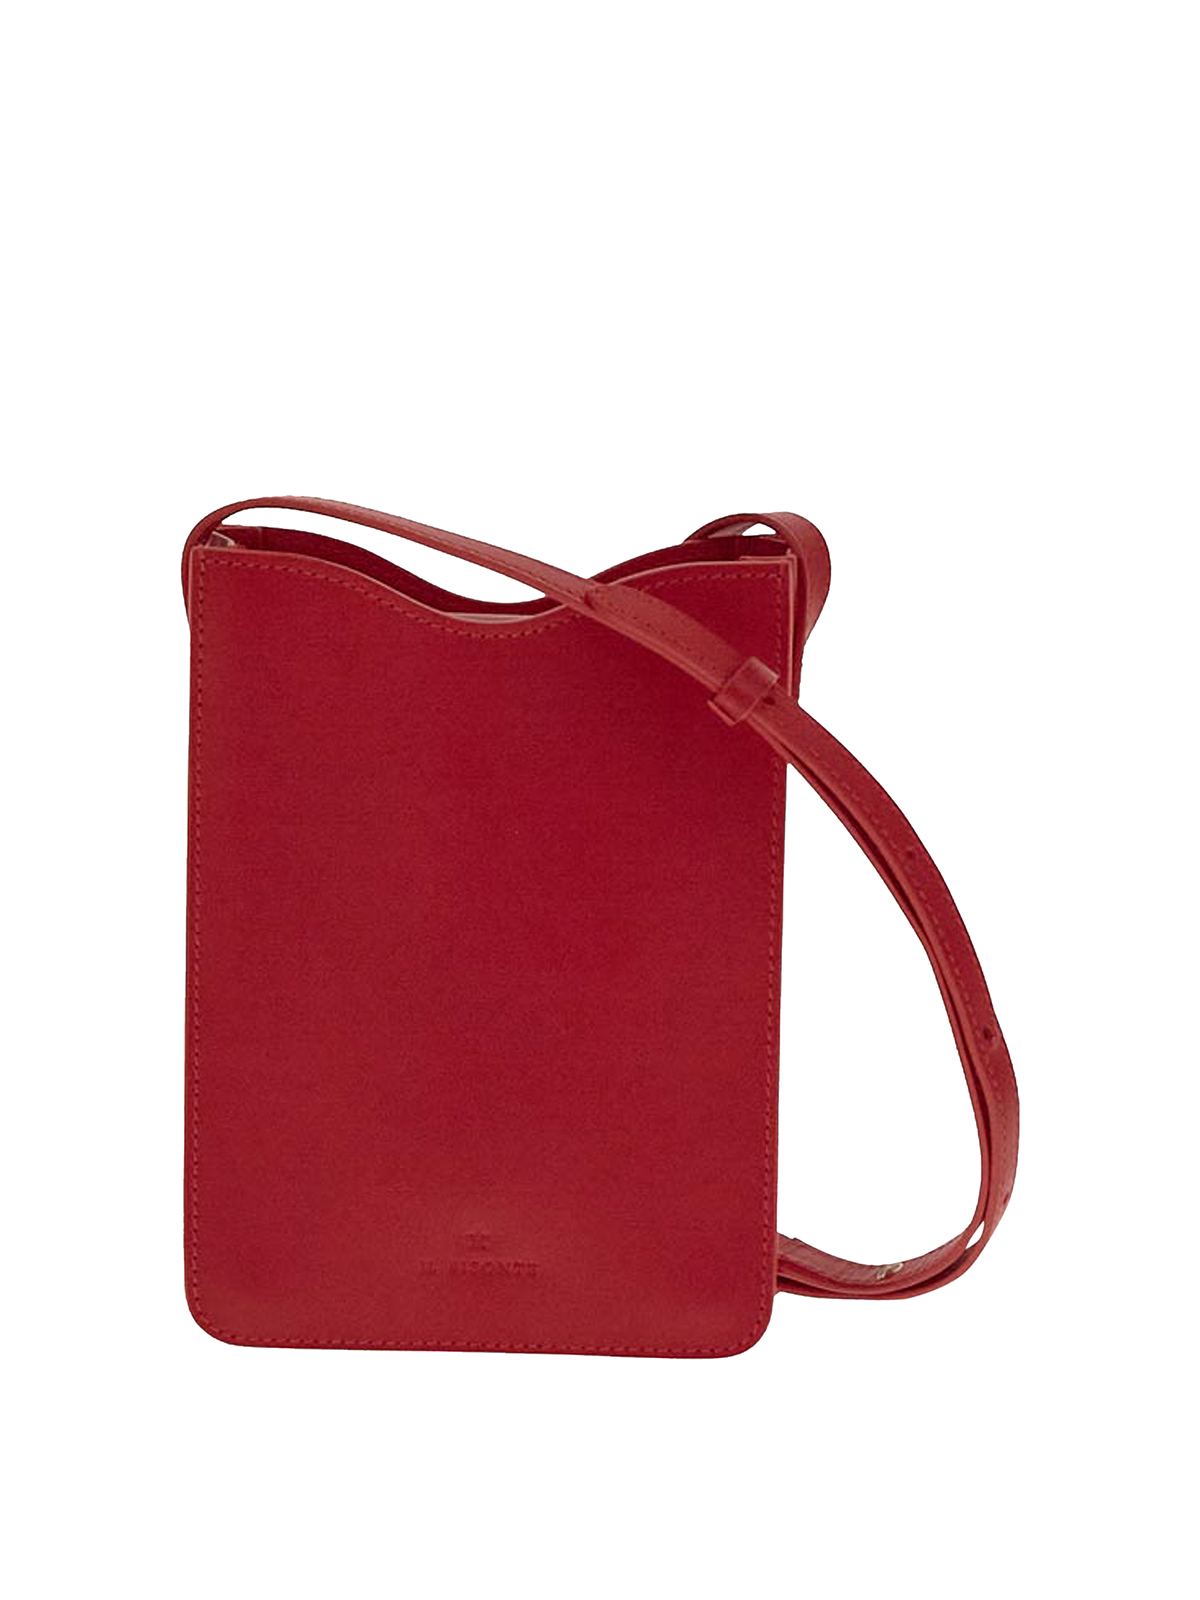 Il Bisonte Isabel Marant Brown Bag In Red